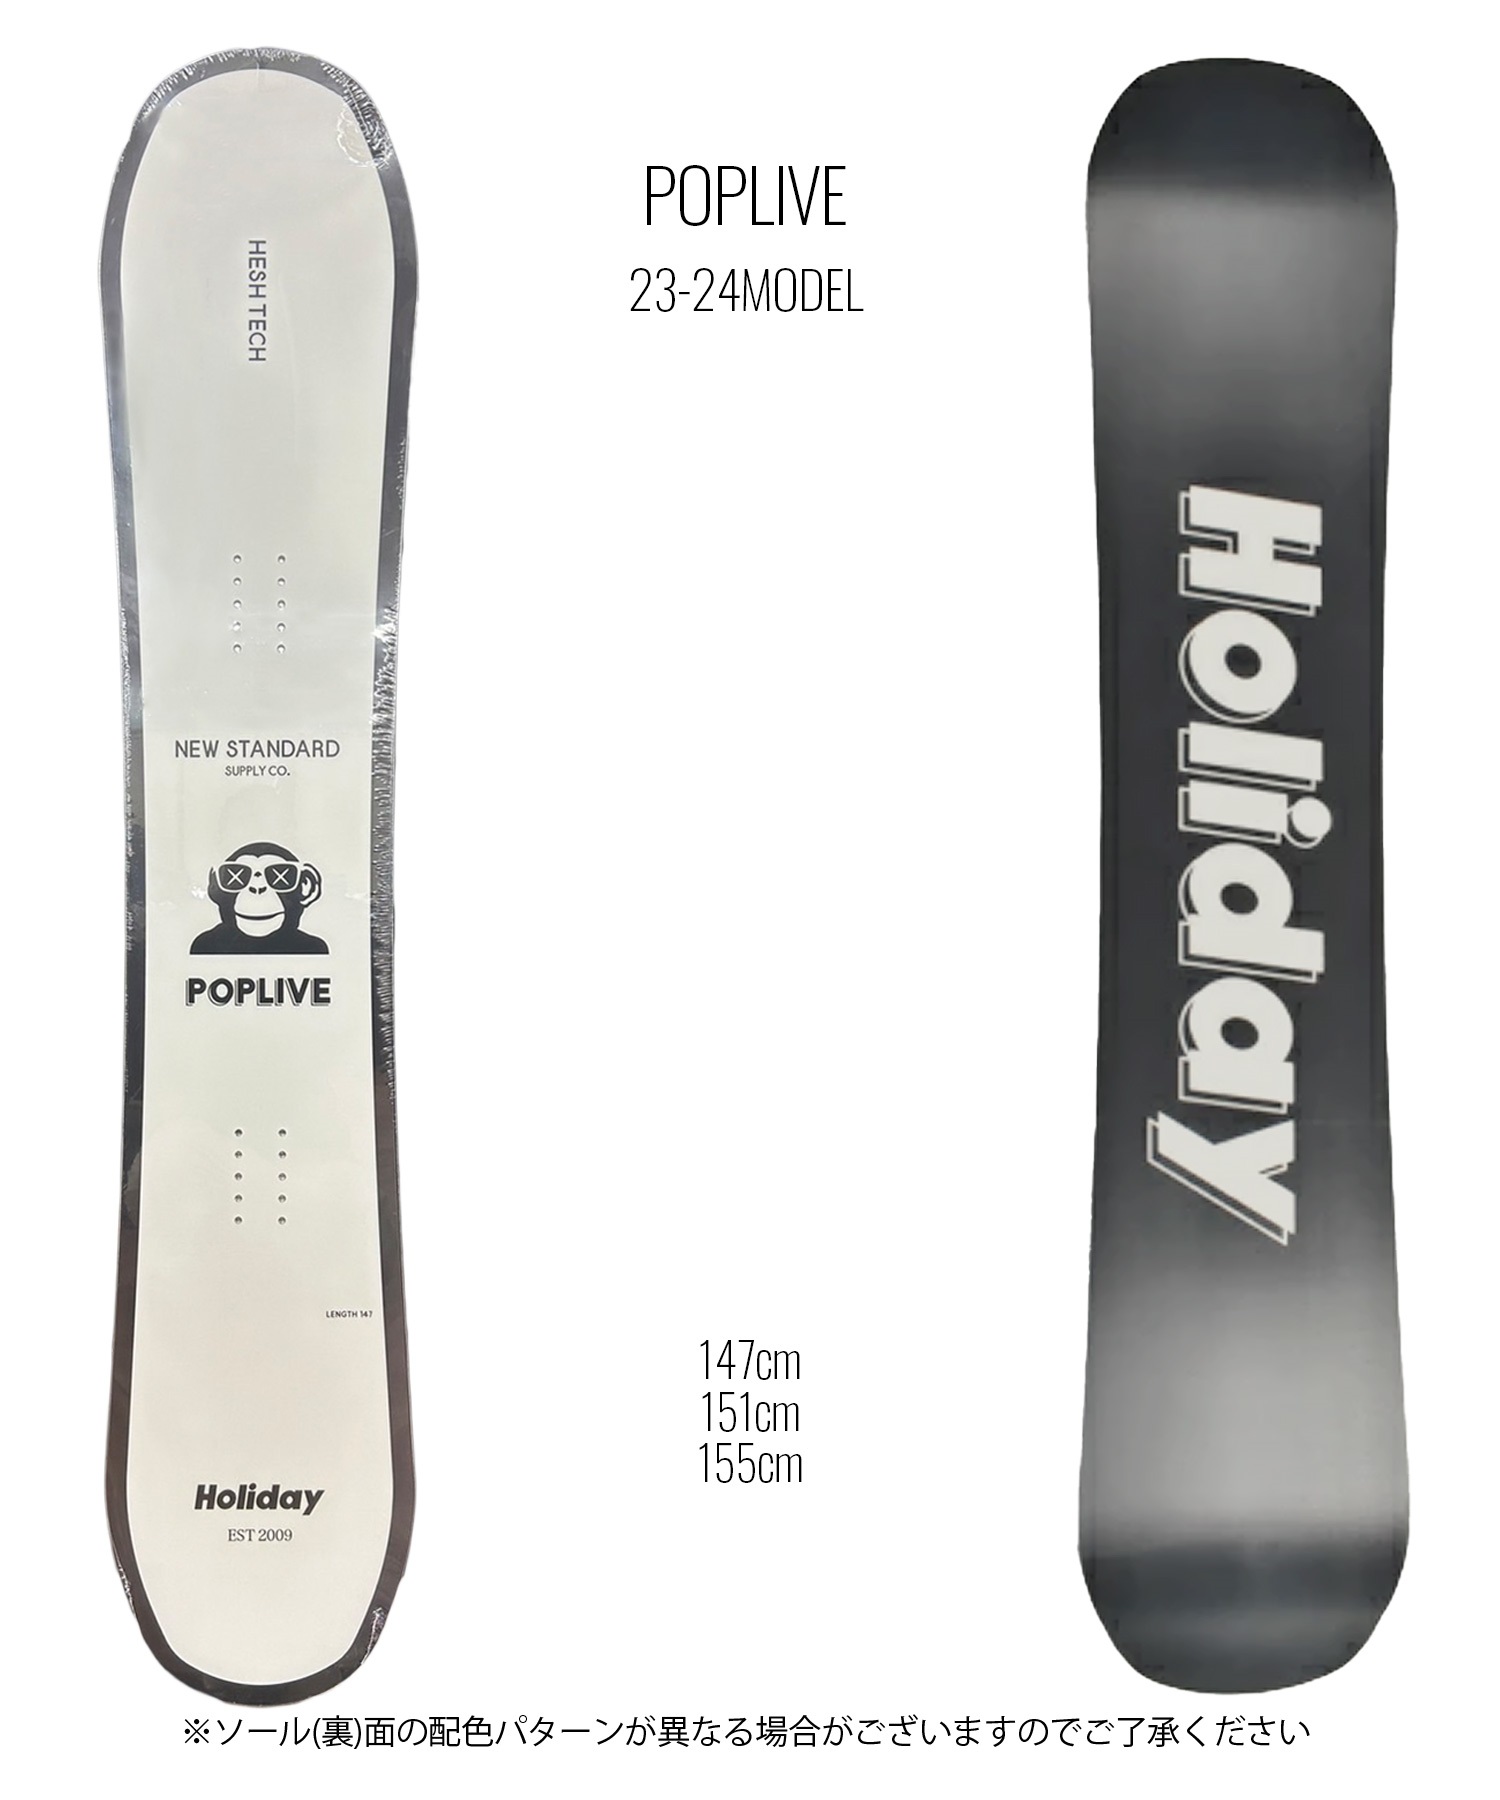 スノーボード 板 メンズ HOLIDAY ホリデイ POPLIVE ムラサキスポーツ 23-24モデル KK L1(ONECOLOR-147cm)